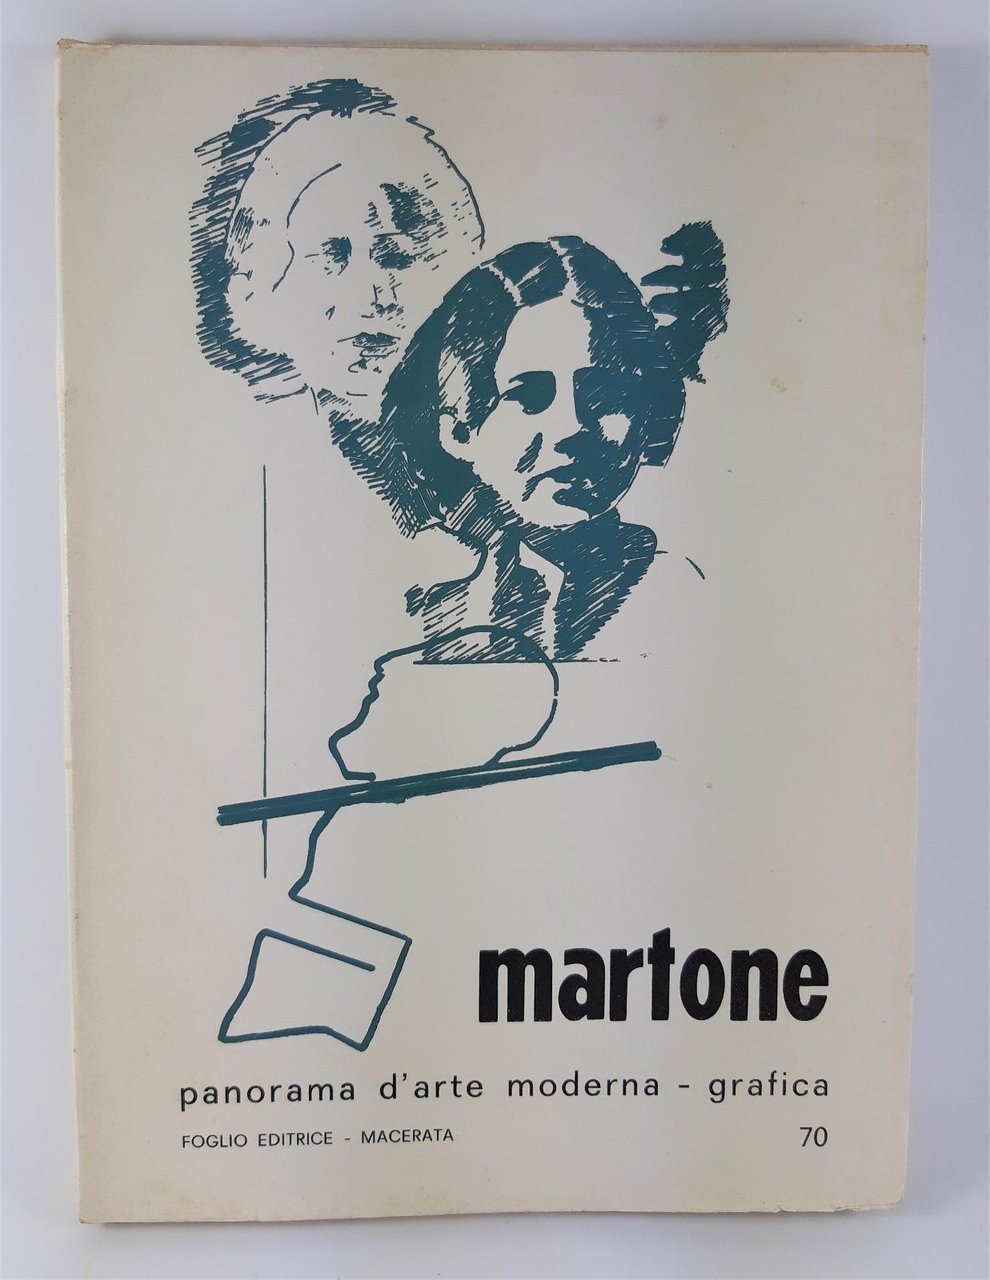 Panorama d'arte moderna grafica Martone Foglio editore